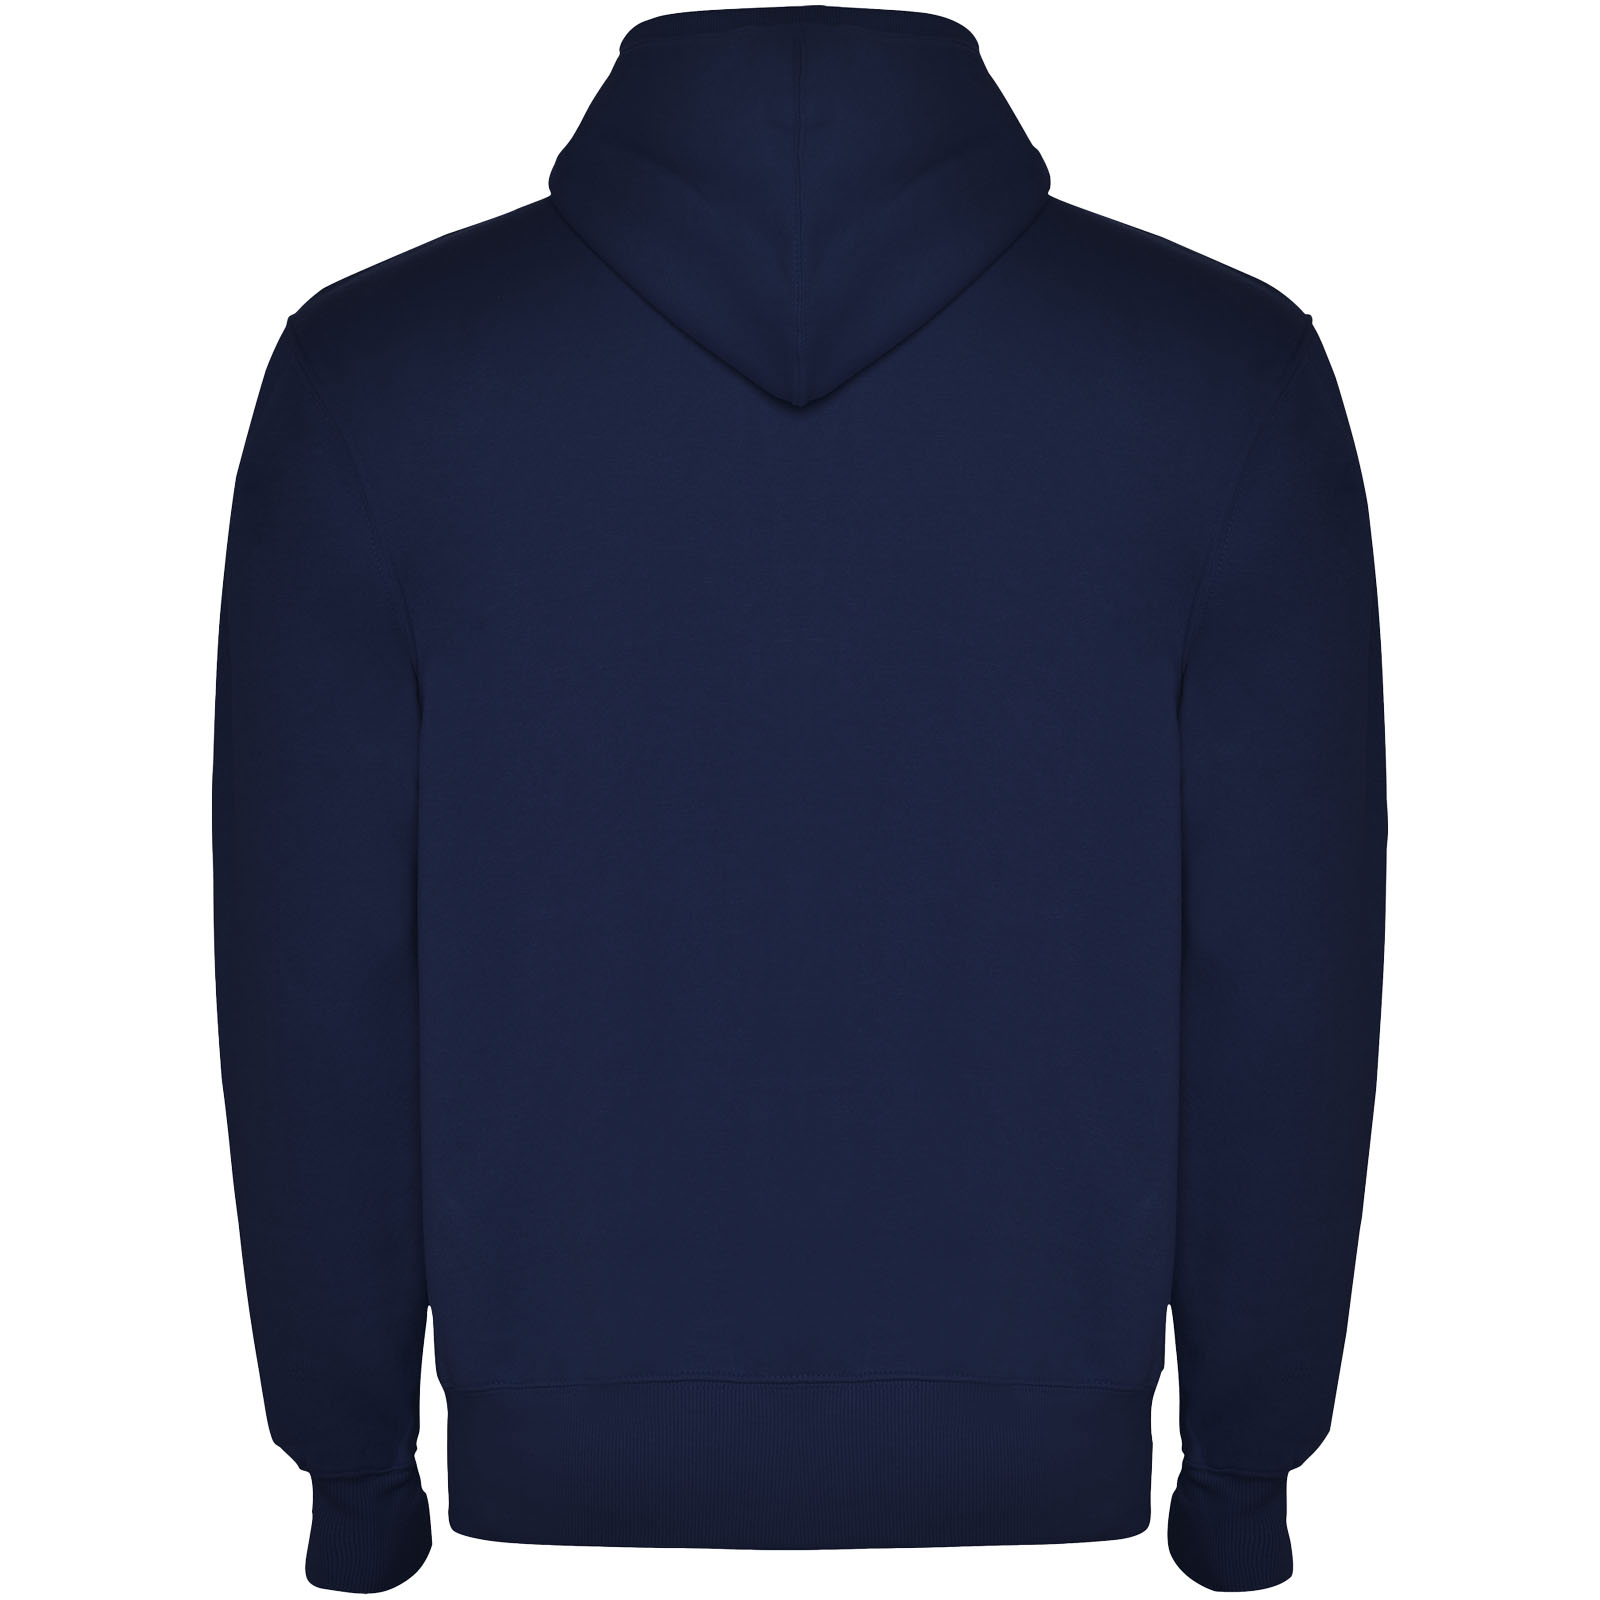 Advertising Hoodies - Montblanc unisex full zip hoodie - 1